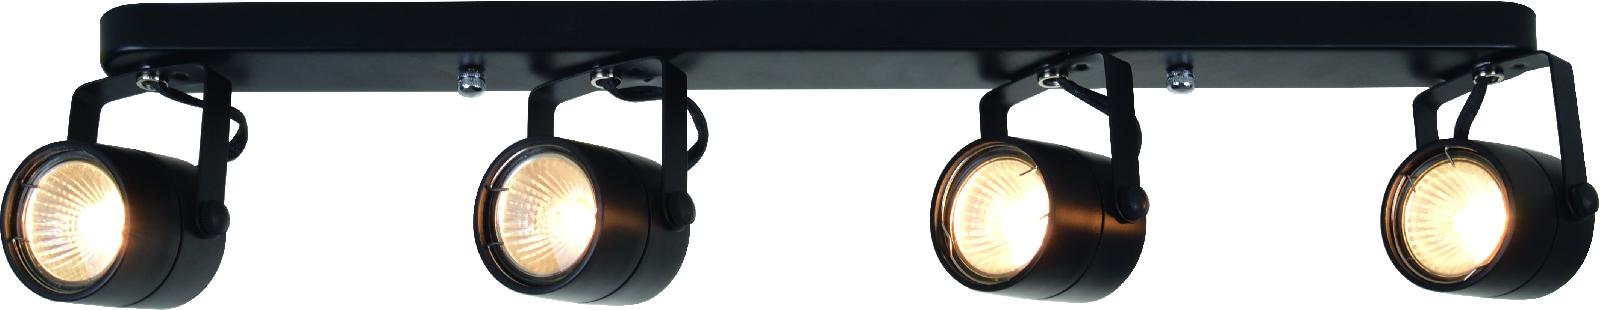 Светильник накладной Arte Lamp Lente A1310PL-4BK